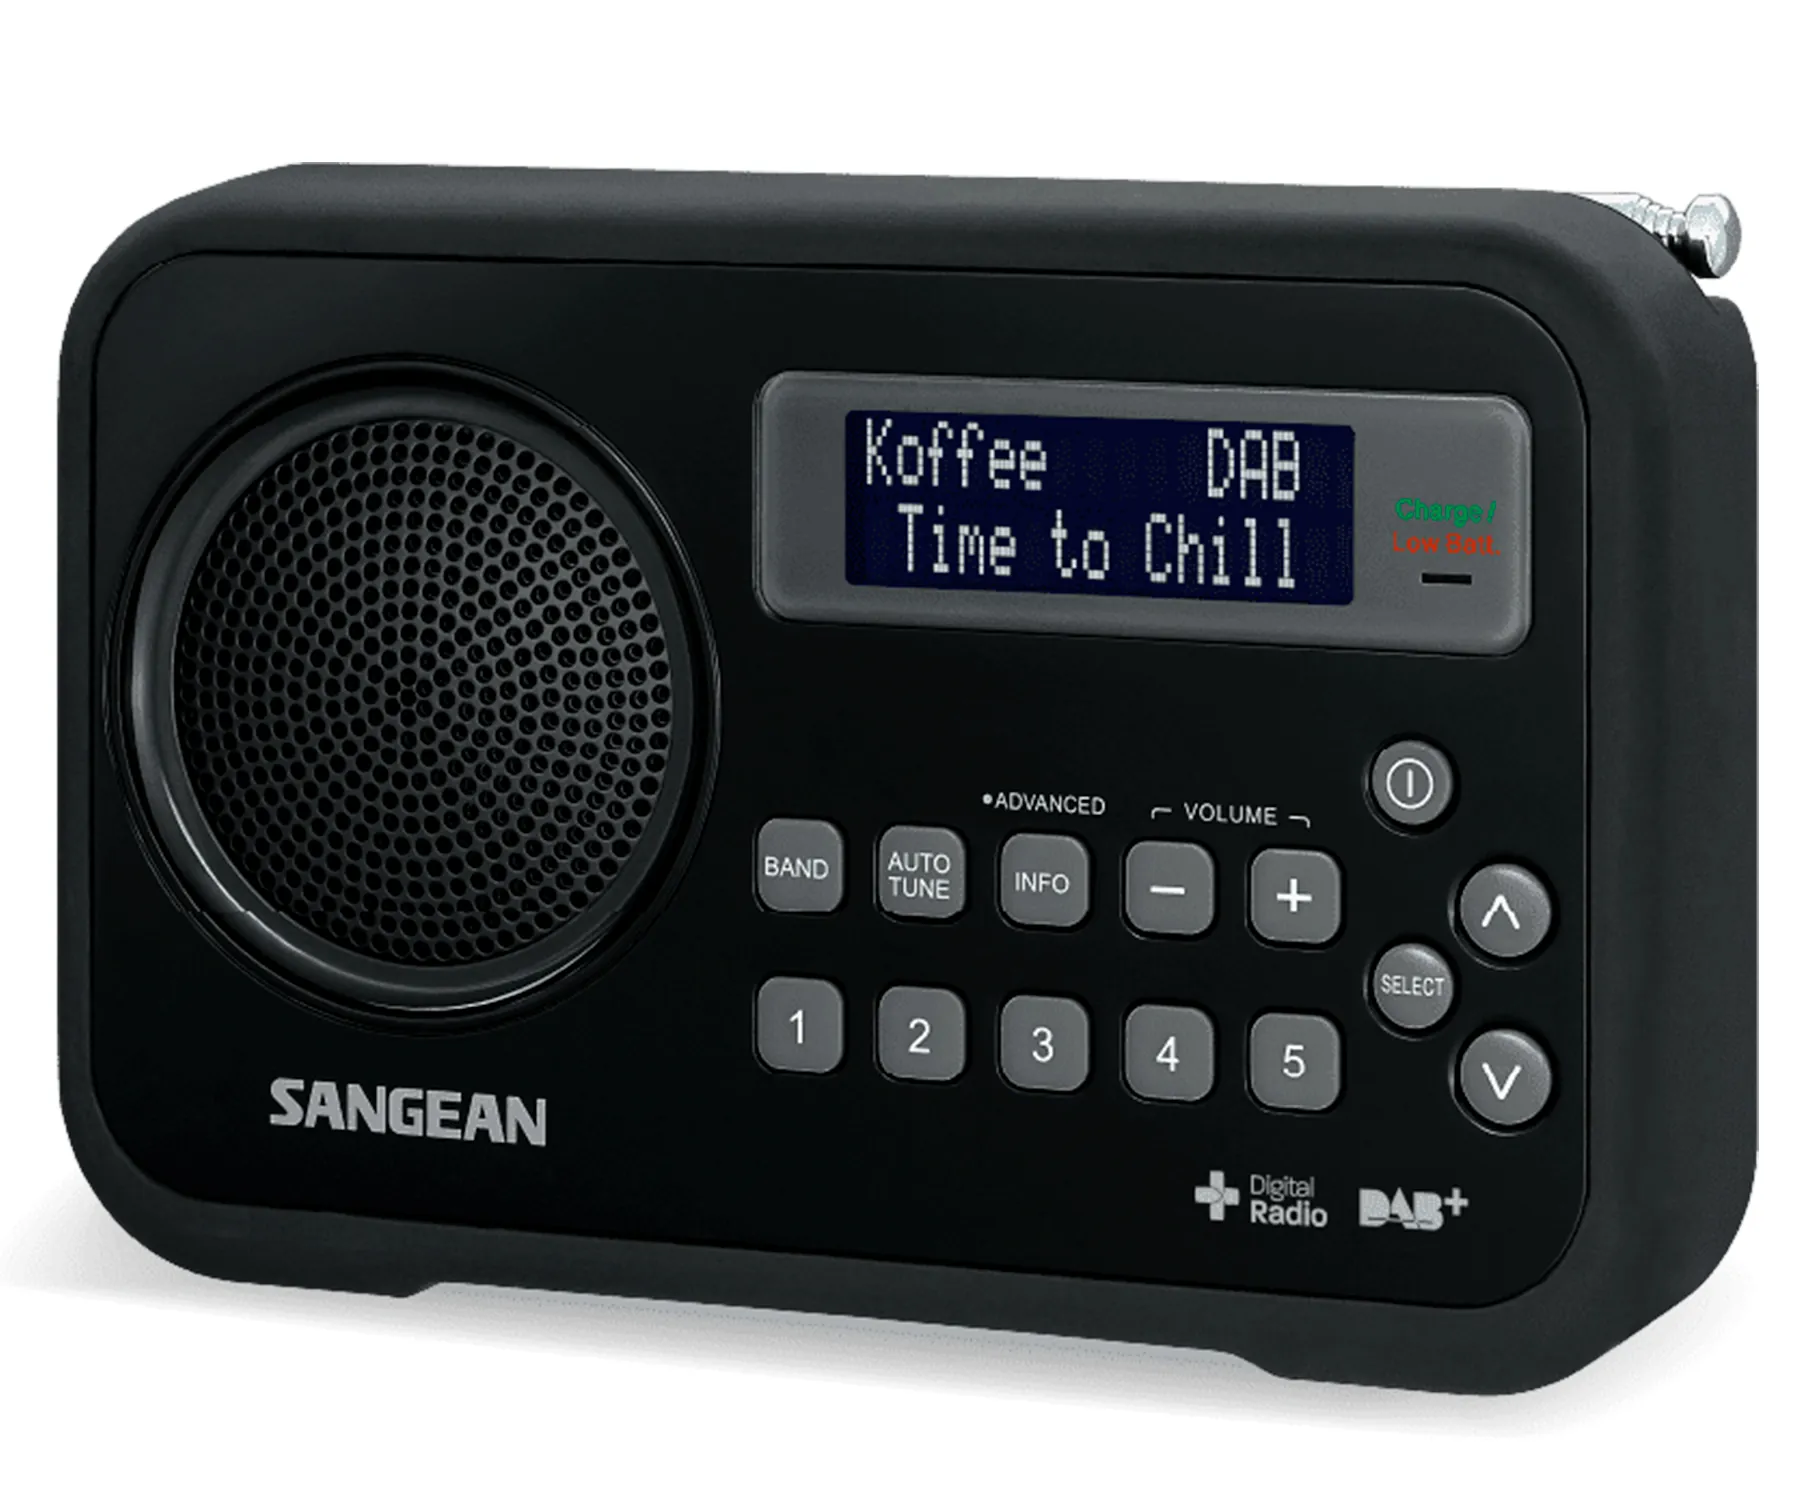  Sangean - Radio digital, portátil y recargable Negro